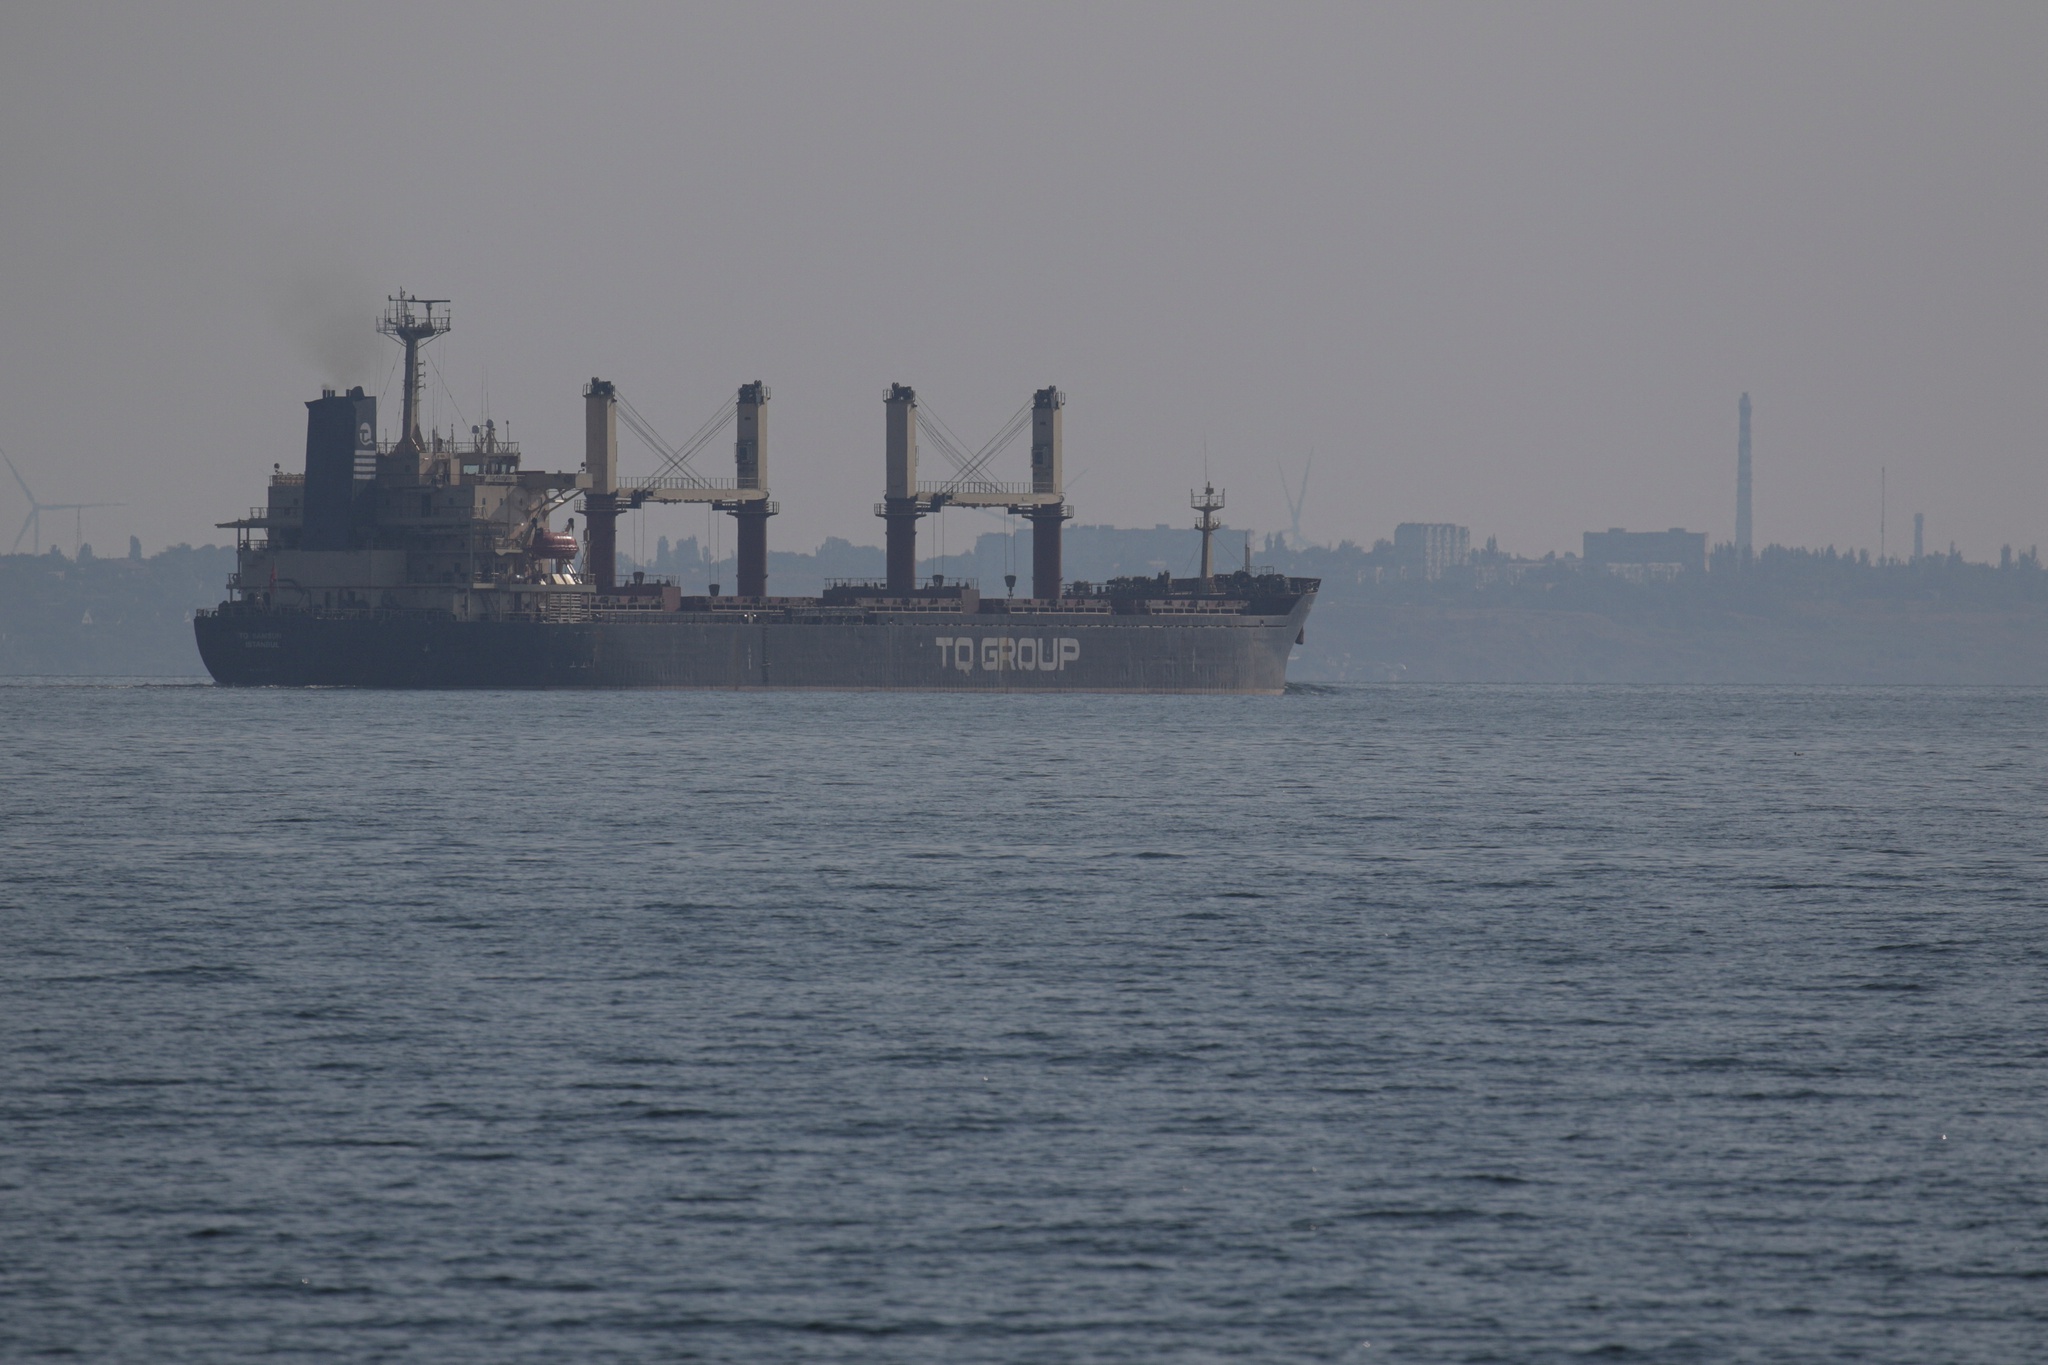 Os confrontos no mar Negro intensificaram-se nas últimas semanas, terminado o acordo para a exportação dos cereais ucranianos. O TQ Samsun foi o último navio a partir de Odessa ao abrigo desse acordo